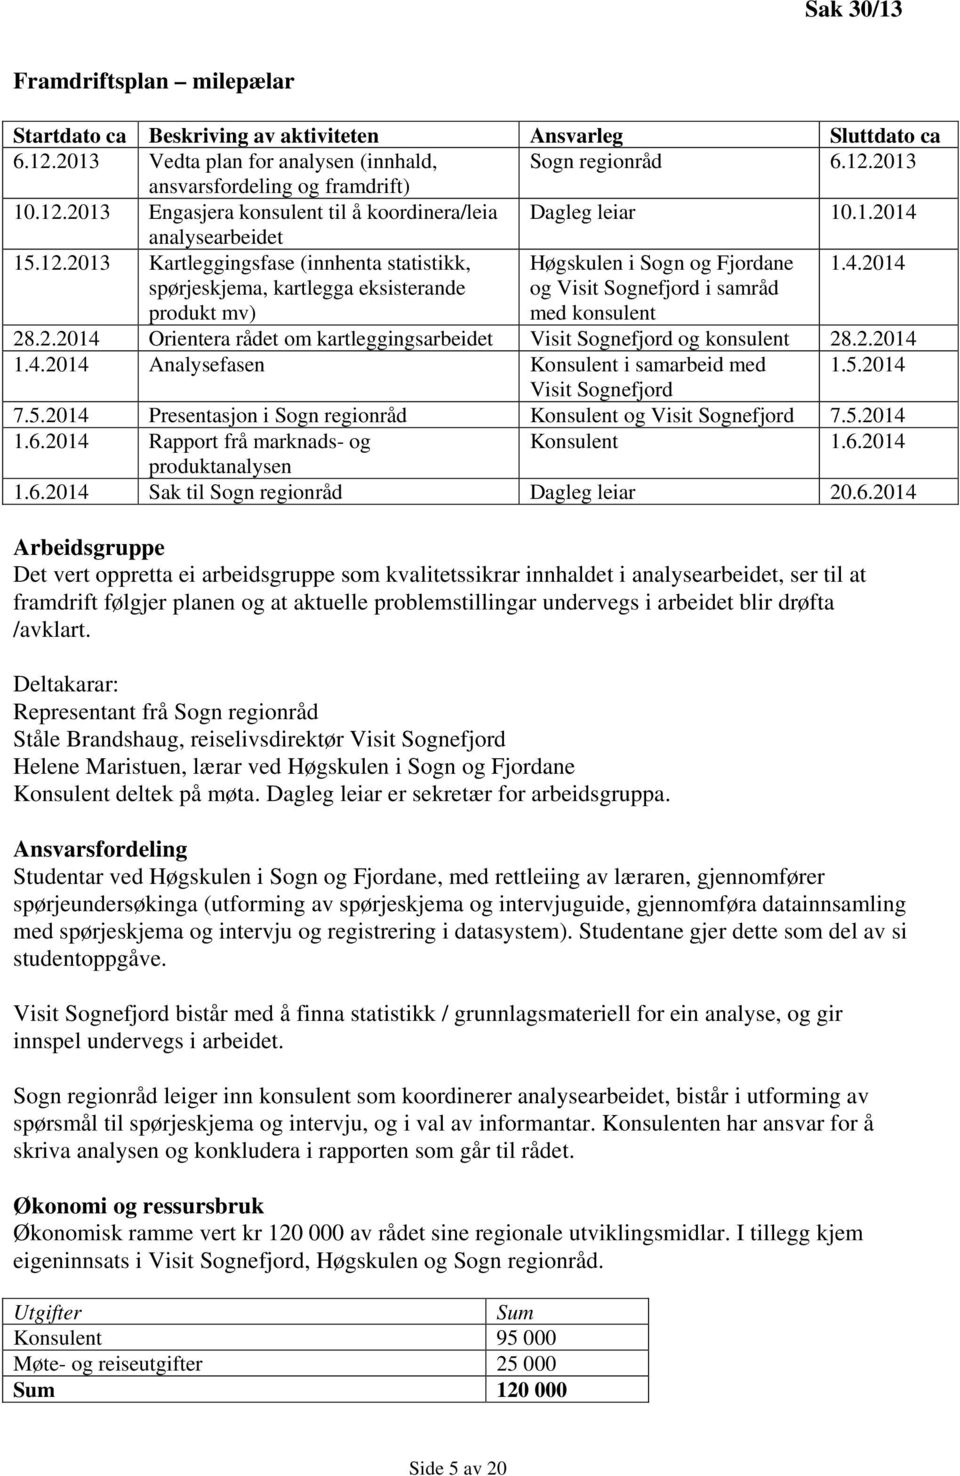 2.2014 Orientera rådet om kartleggingsarbeidet Visit Sognefjord og konsulent 28.2.2014 1.4.2014 Analysefasen Konsulent i samarbeid med 1.5.